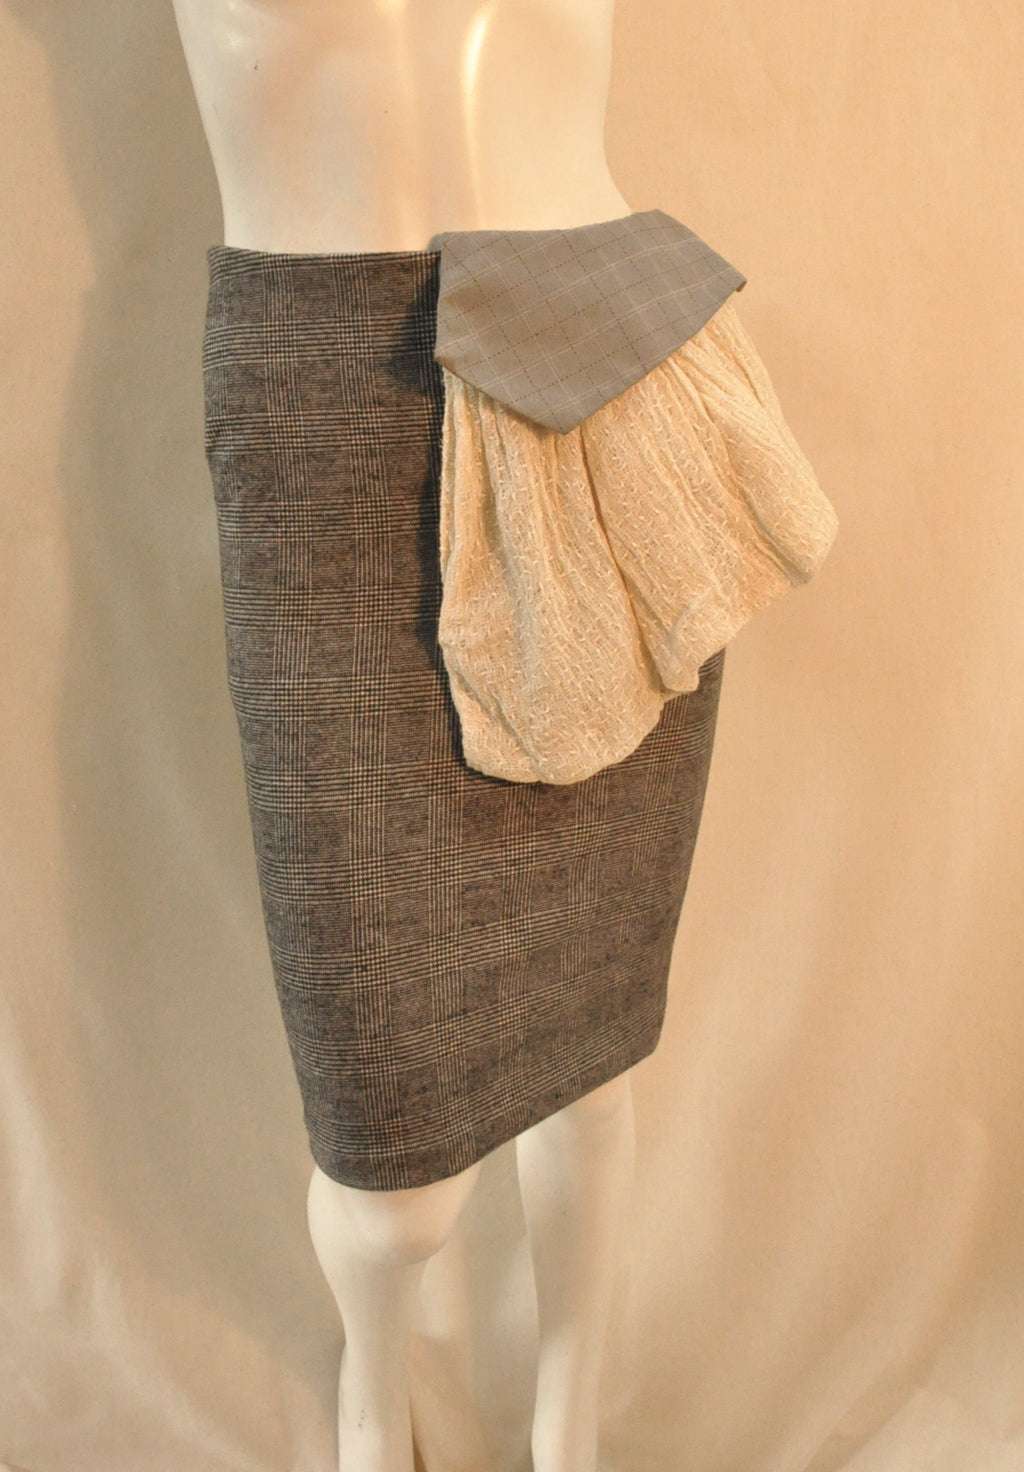 Skirt kerchief